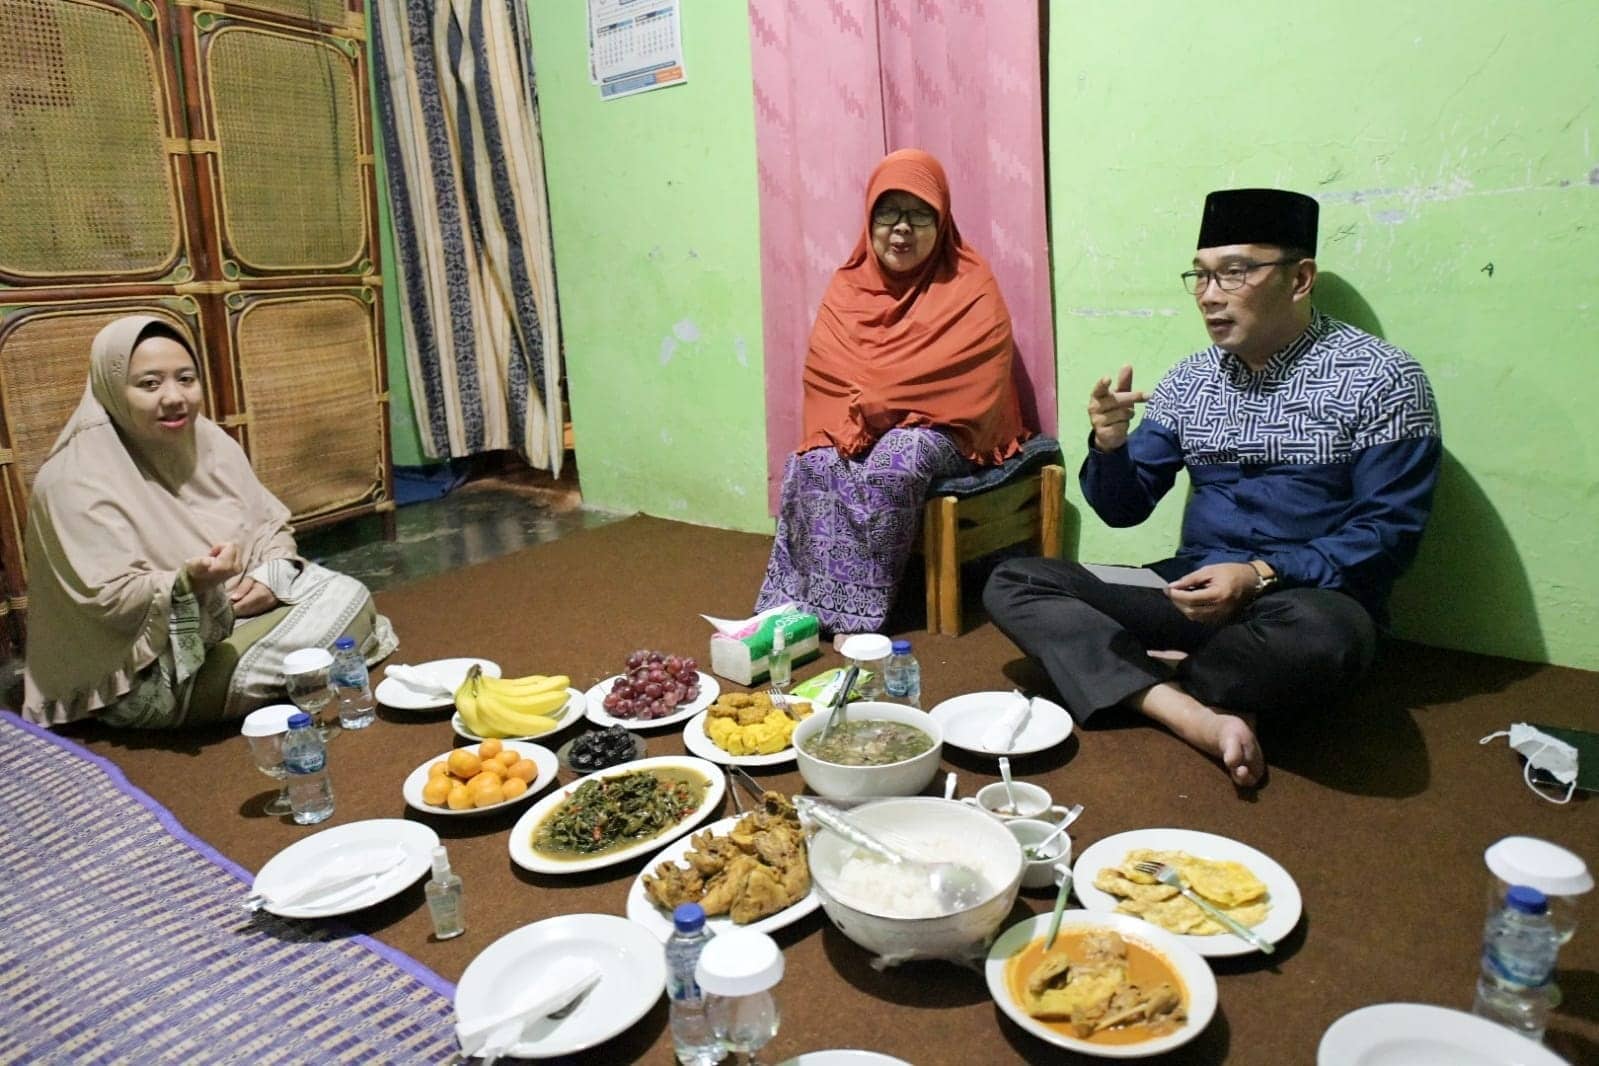 SAHUR BERSAMA. Gubernur Ridwan Kamil menyambangi rumah warga Pra Sejahtera, Mak Endah dan tanpa canggung menyantap sahur bersama di kediaman Mak Endah.